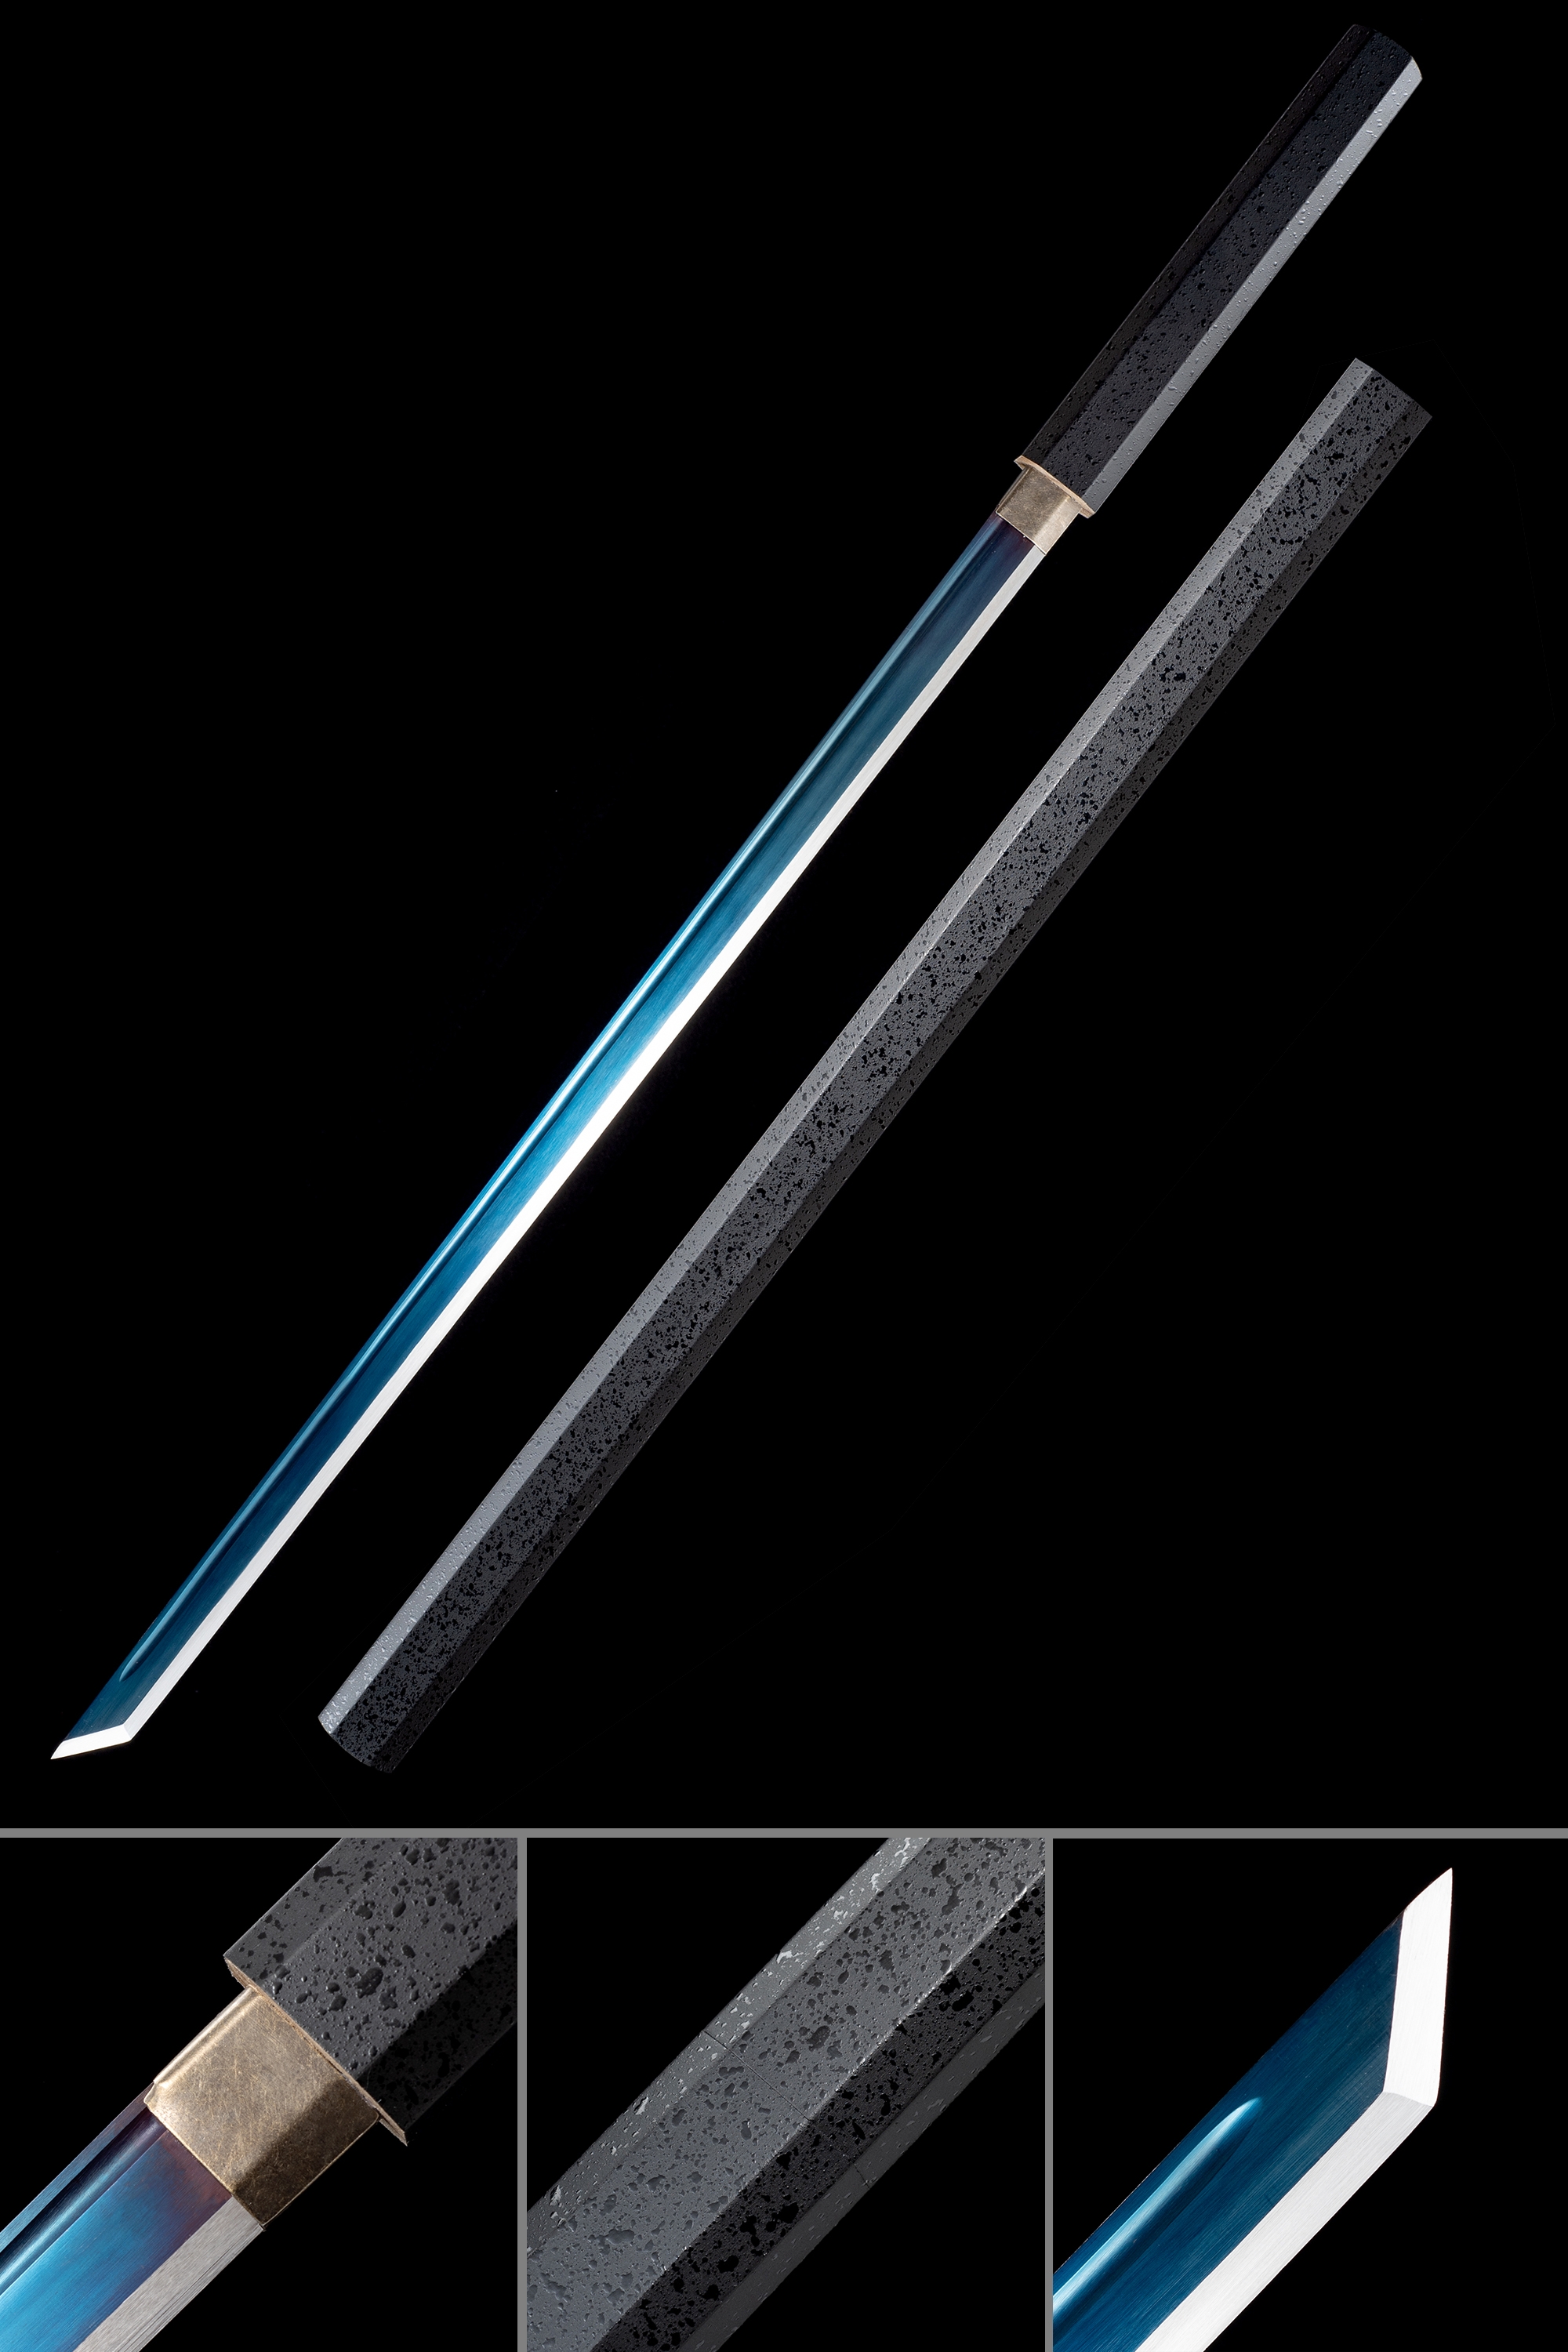 Handmade Grass Cutter Sasuke's Uchiha Sword Of Kusanagi With Blue Blade - Naruto